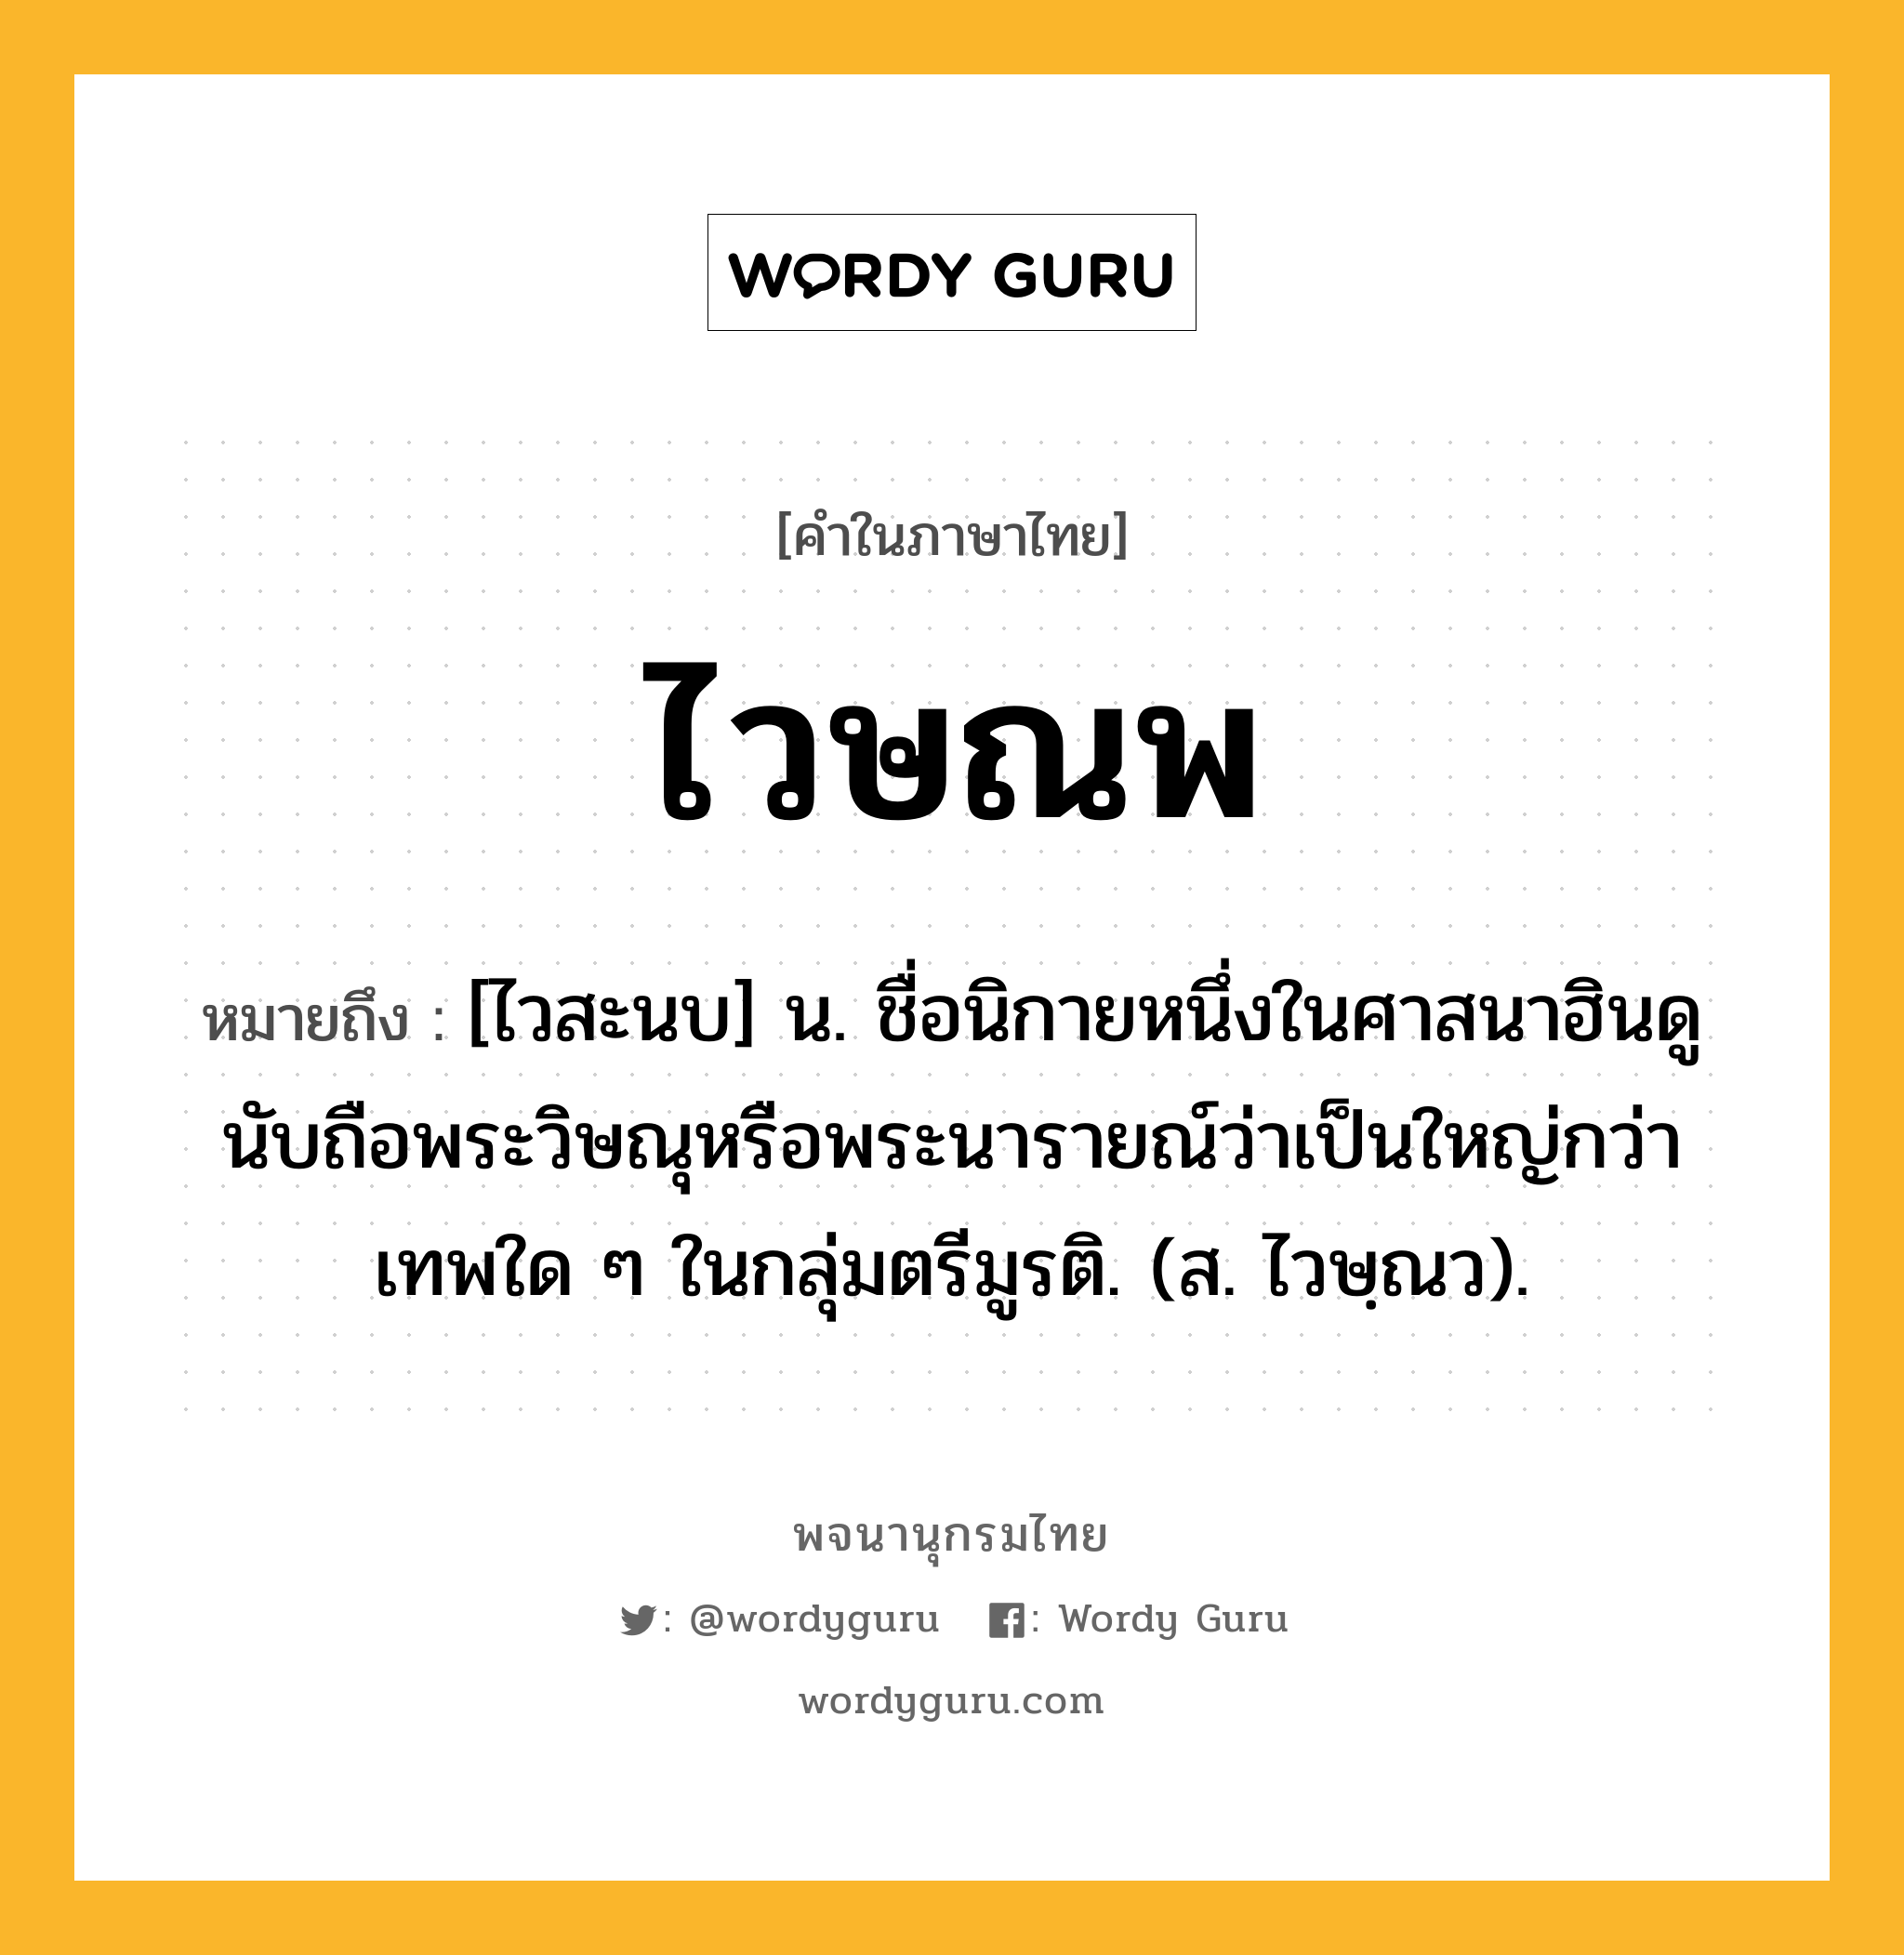 ไวษณพ ความหมาย หมายถึงอะไร?, คำในภาษาไทย ไวษณพ หมายถึง [ไวสะนบ] น. ชื่อนิกายหนึ่งในศาสนาฮินดู นับถือพระวิษณุหรือพระนารายณ์ว่าเป็นใหญ่กว่าเทพใด ๆ ในกลุ่มตรีมูรติ. (ส. ไวษฺณว).